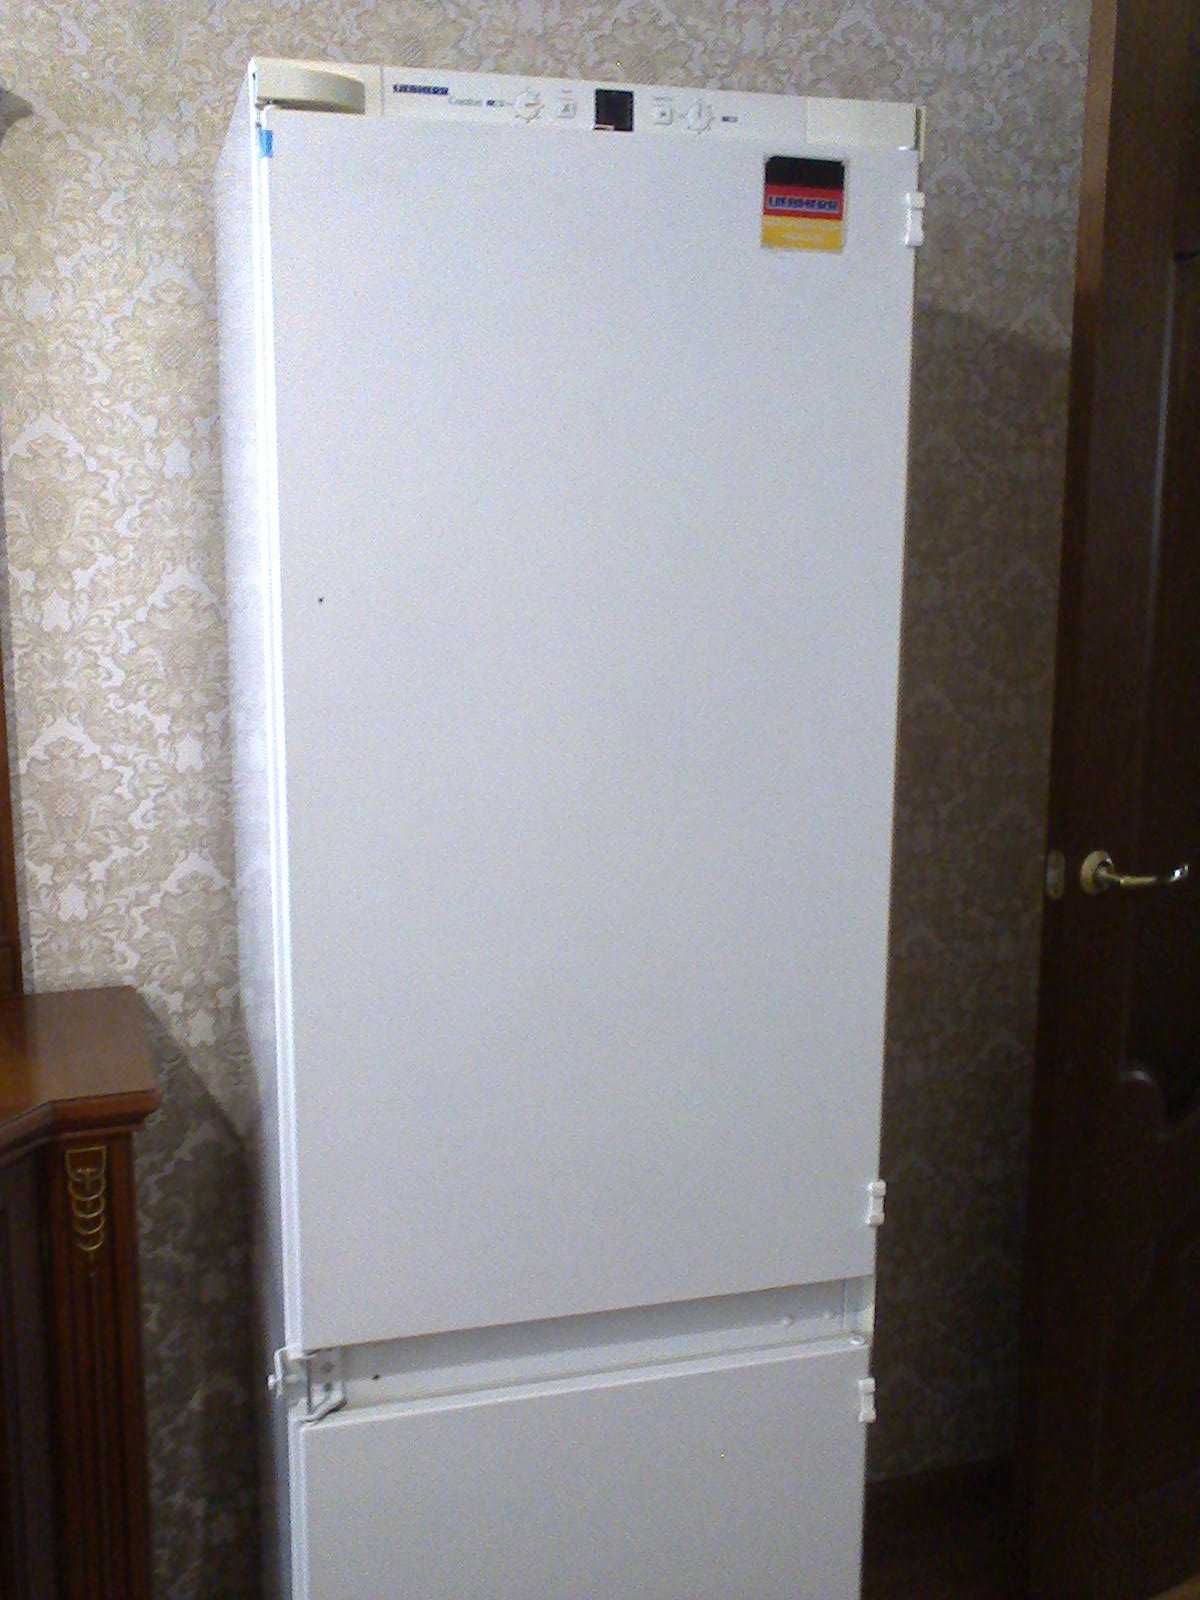 Срочно продам встраиваемый холодильник Либхер,  производство Германия